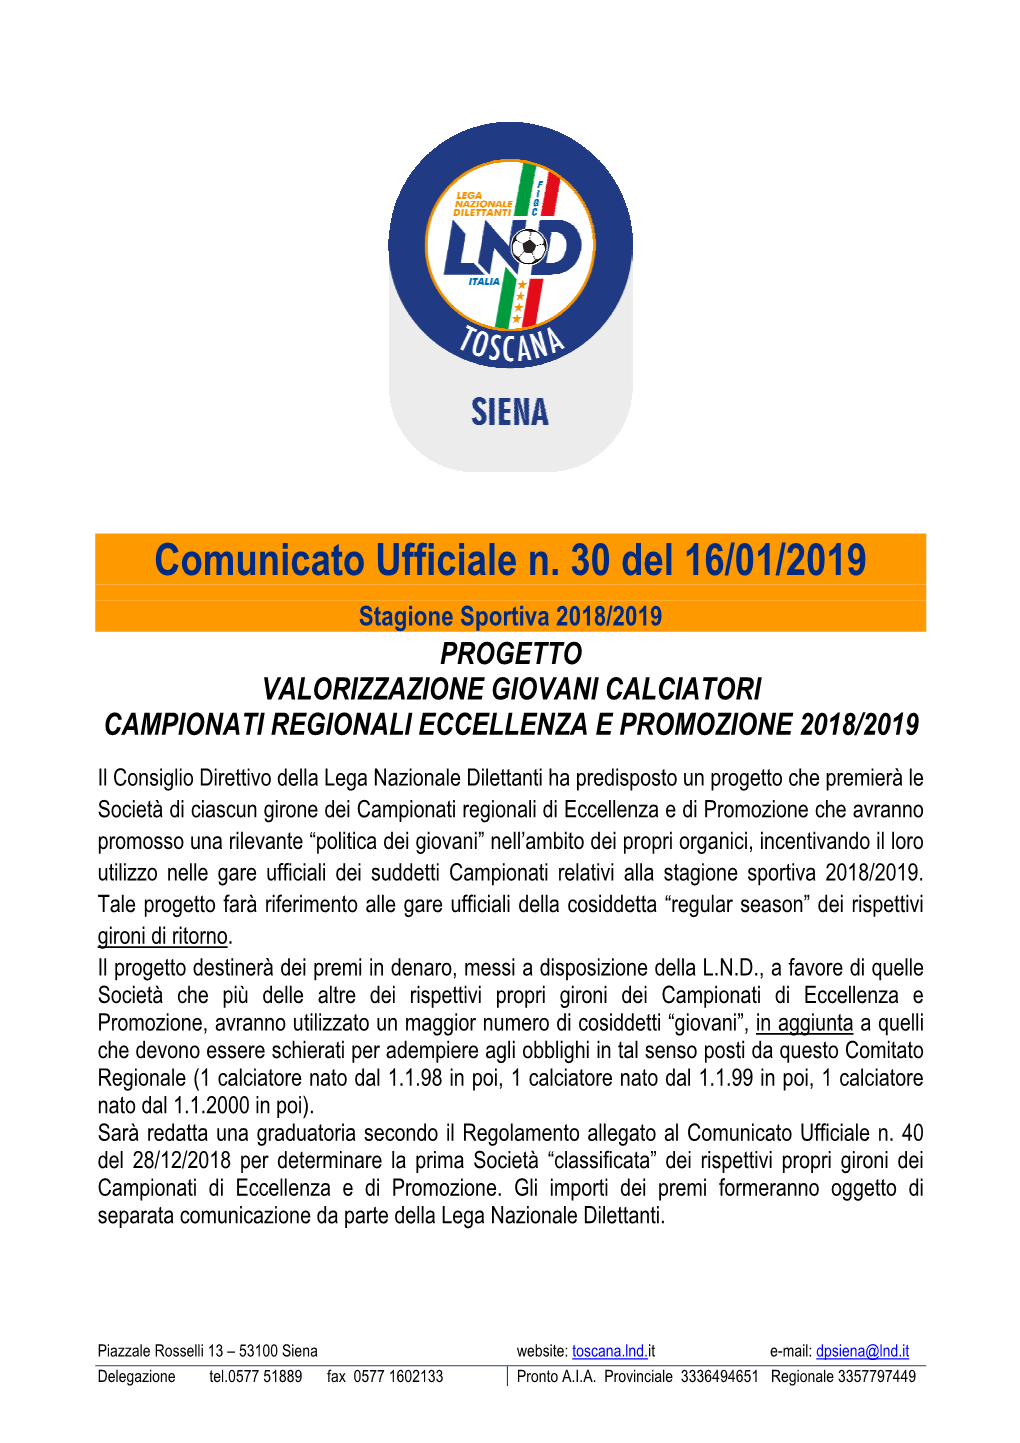 Comunicato Ufficiale N. 30 Del 16/01/2019